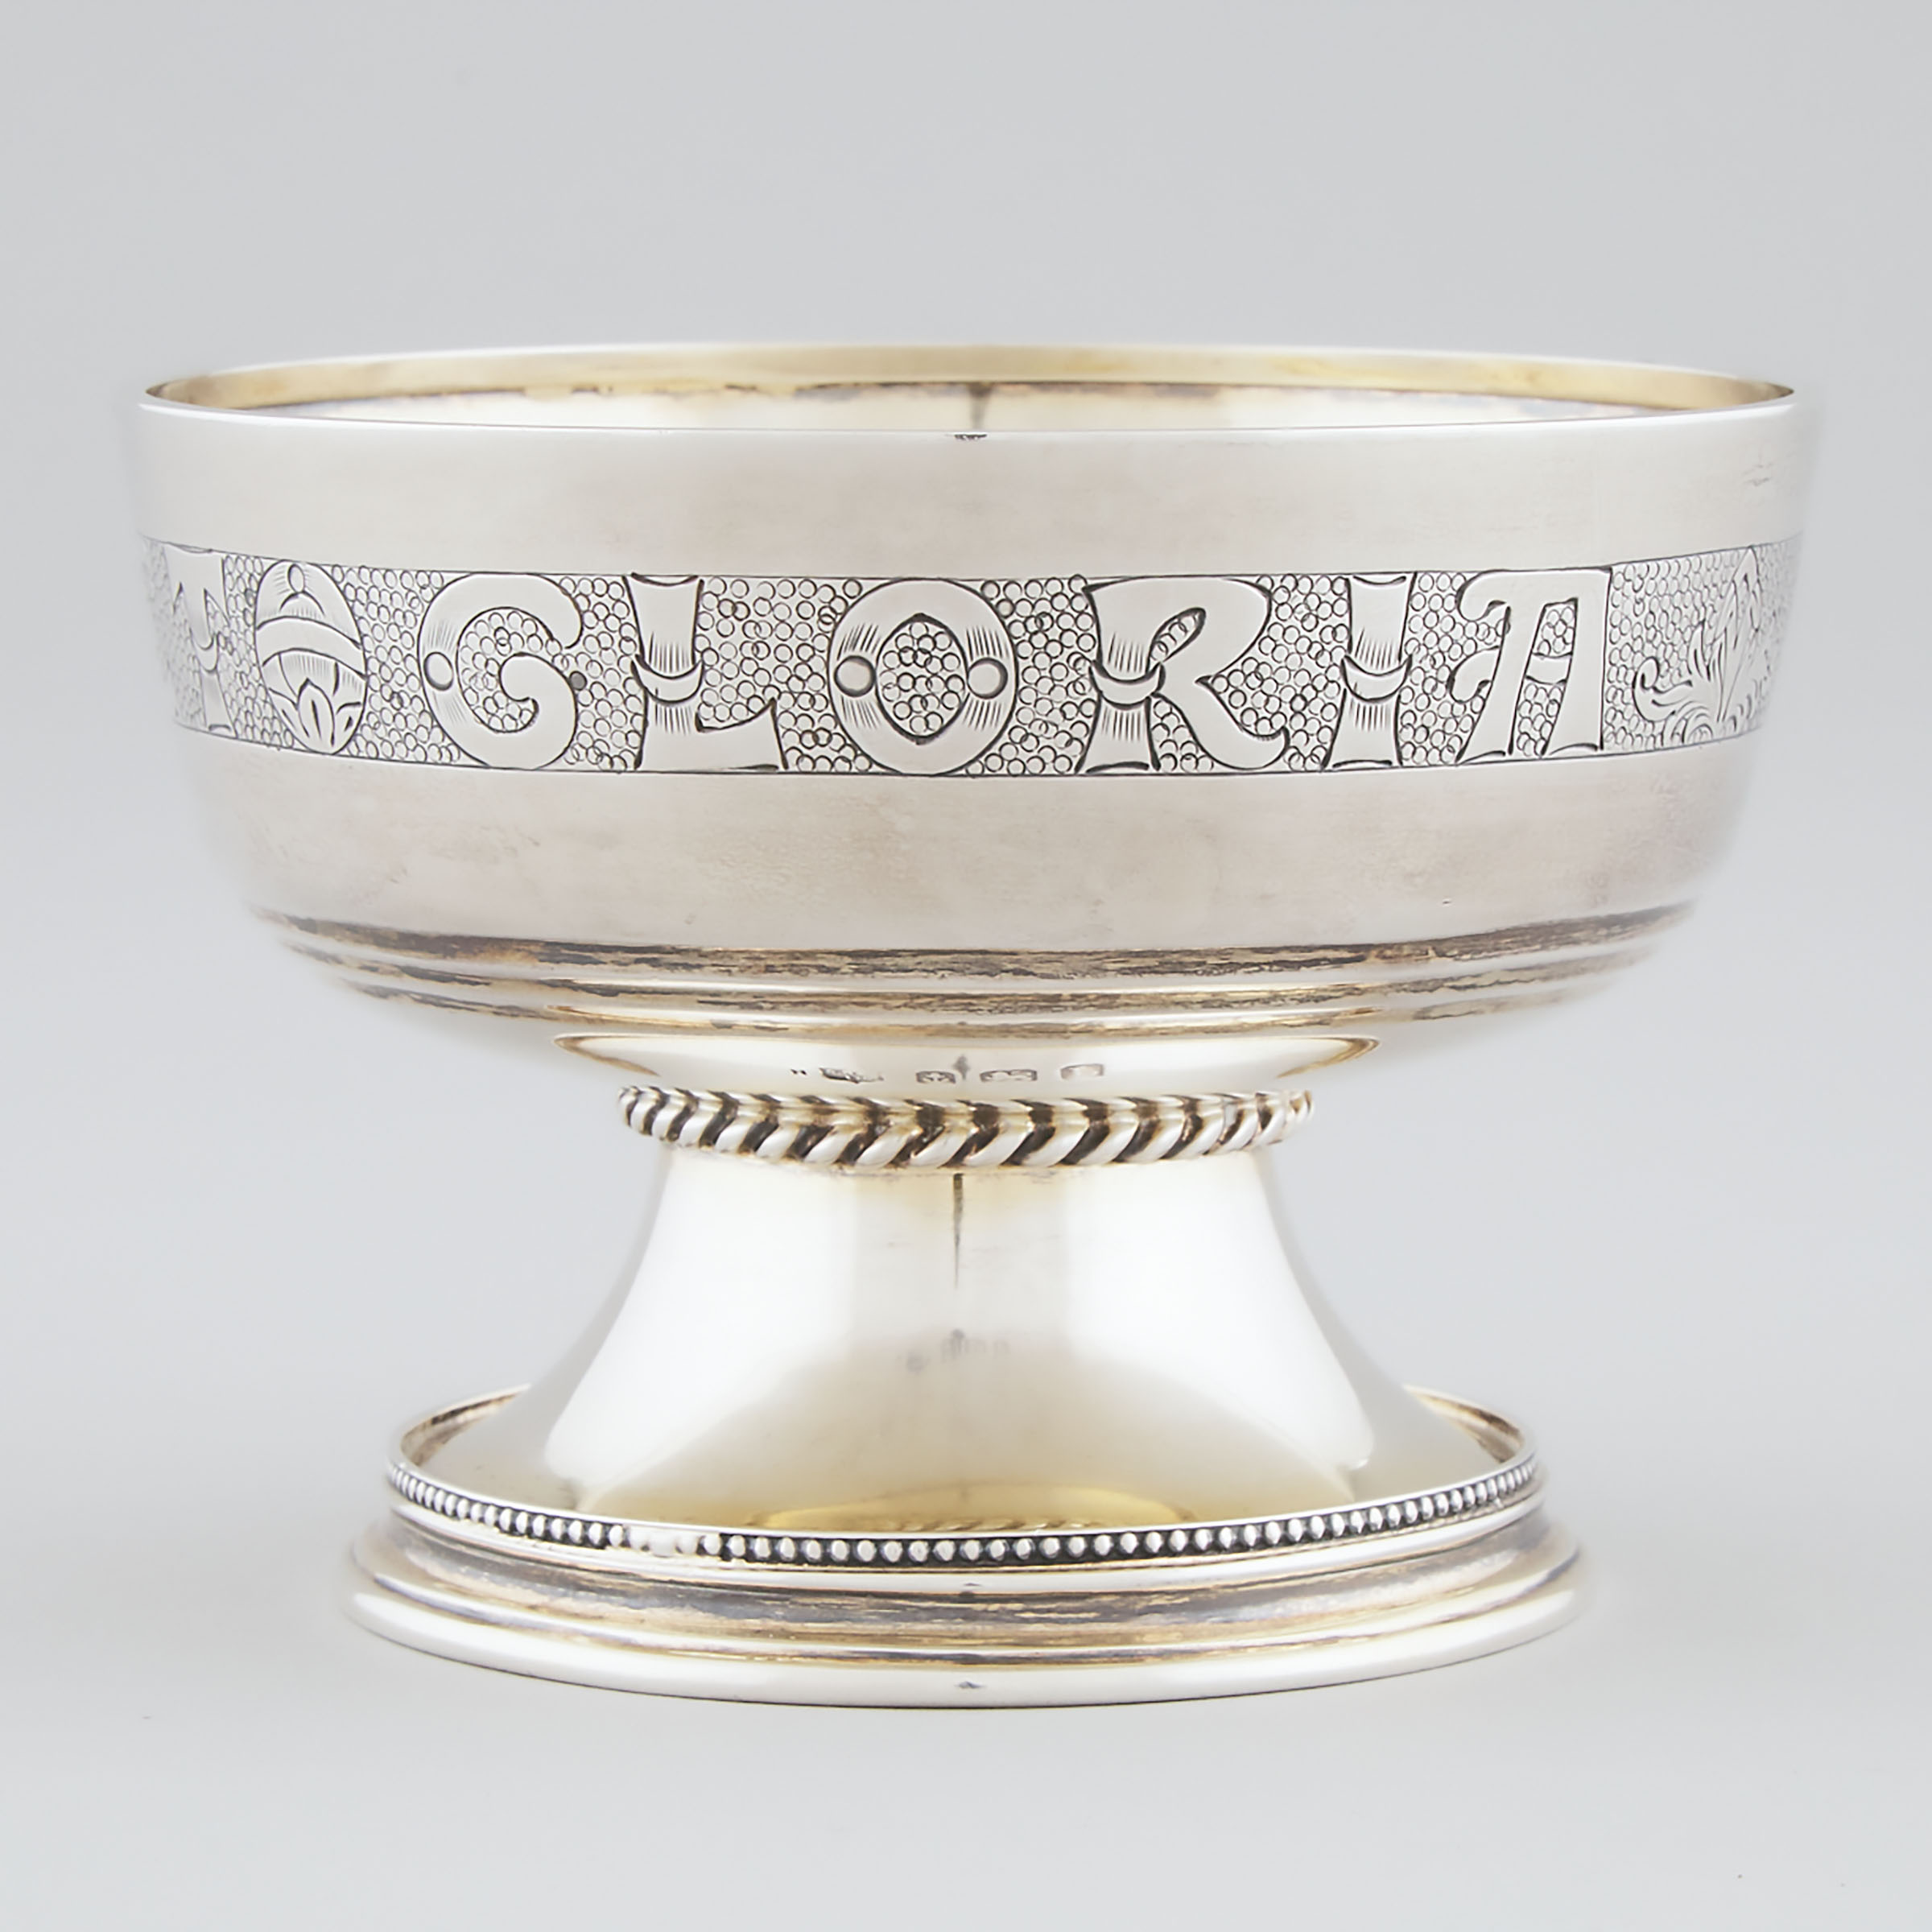 English Silver 'Campion Cup', S. Blanckensee & Son, Birmingham, 1935